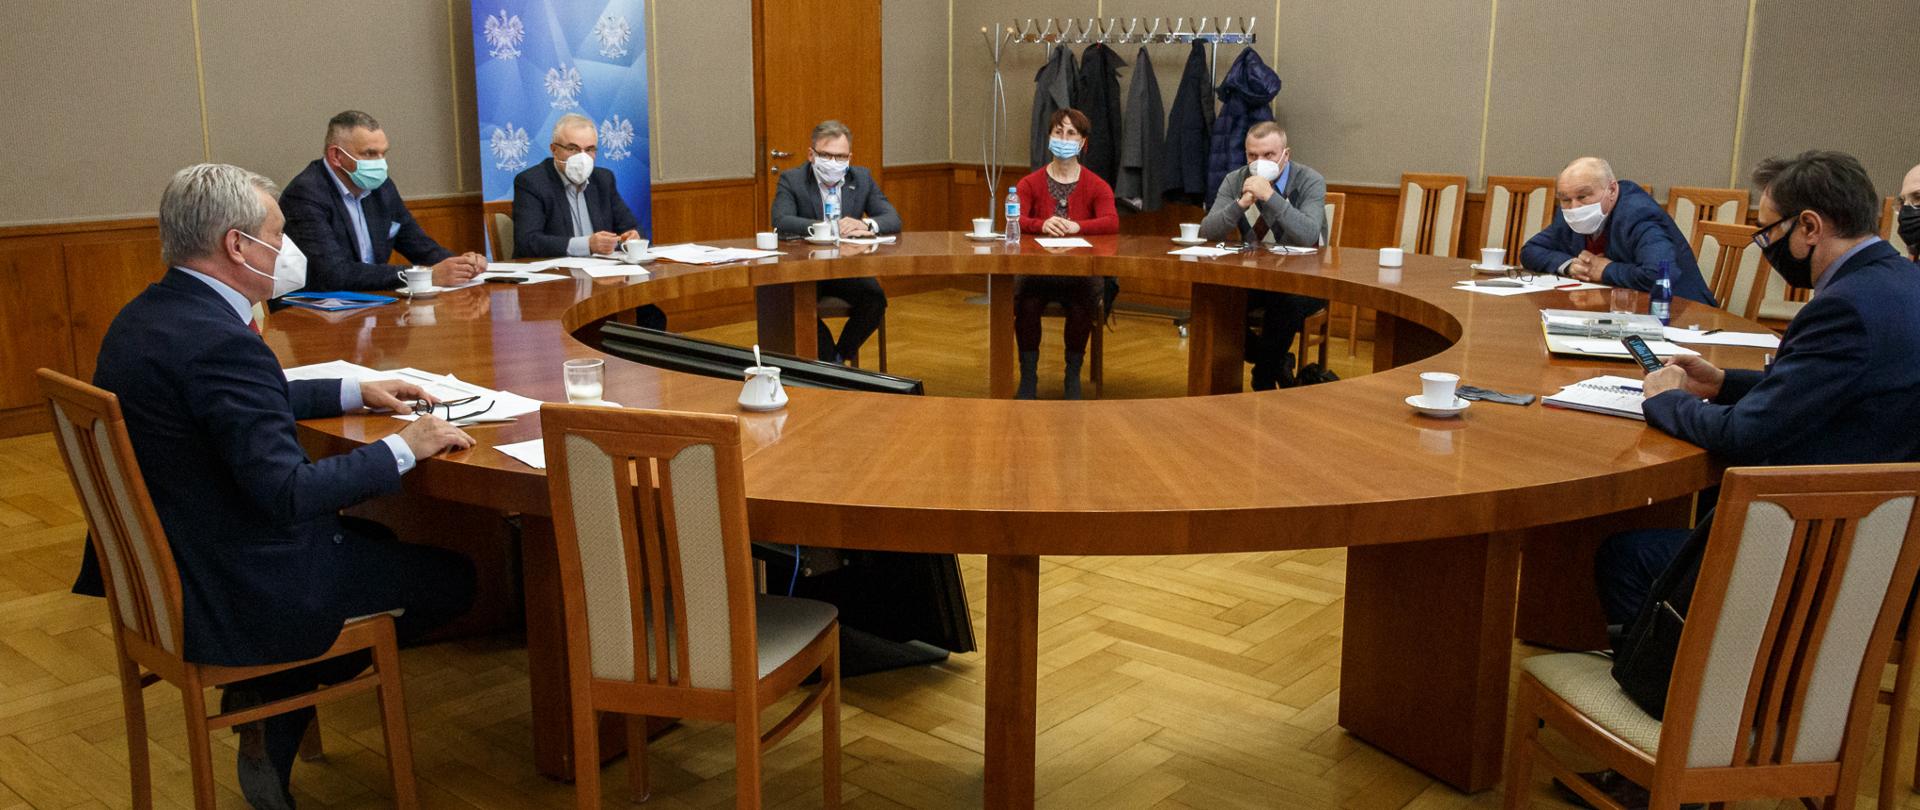 Na zdjęciu 9 osób zasiadających przy okrągłym stole na sali im. Braci Kowalczyków w urzędzie. Po lewej stronie wojewoda opolski, prowadzący spotkanie. 